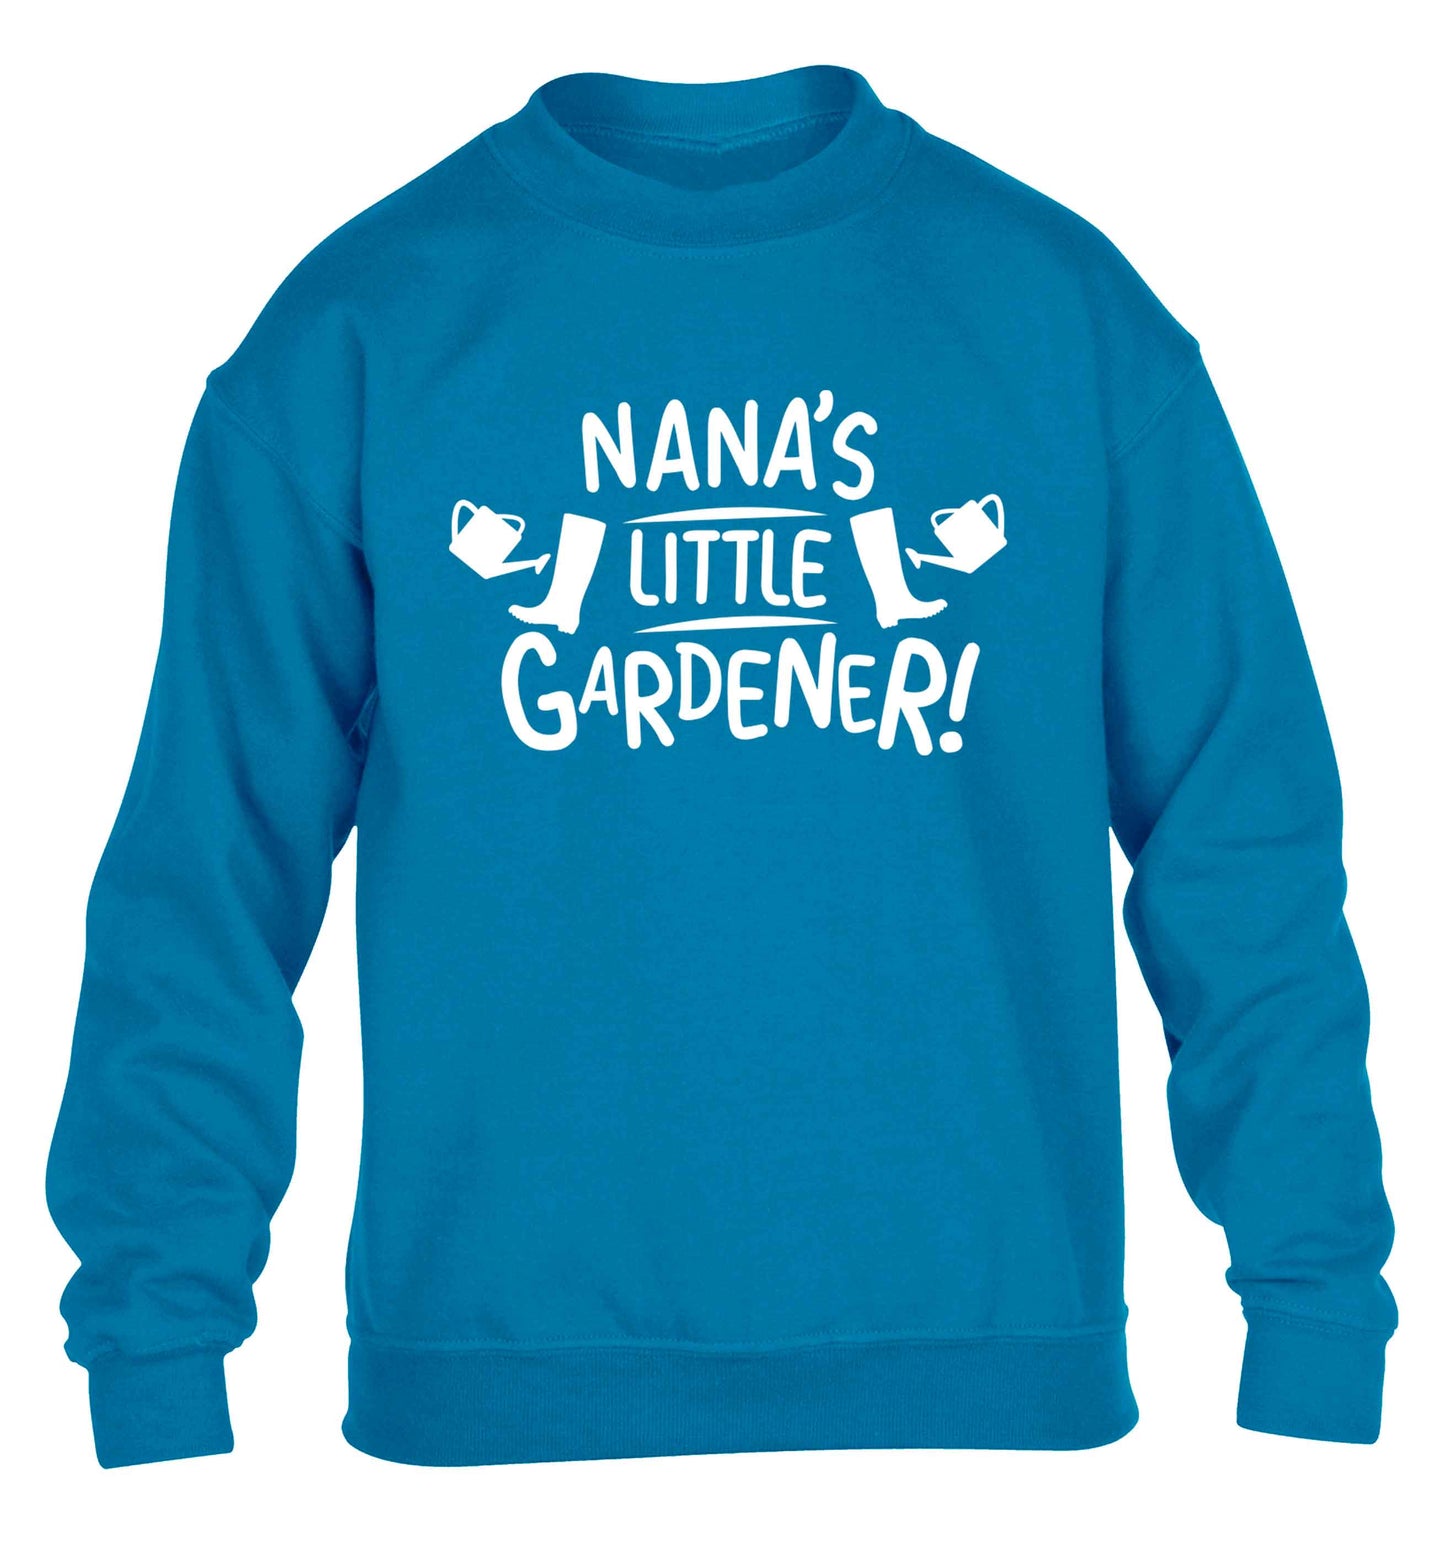 Nana's little gardener children's blue sweater 12-13 Years